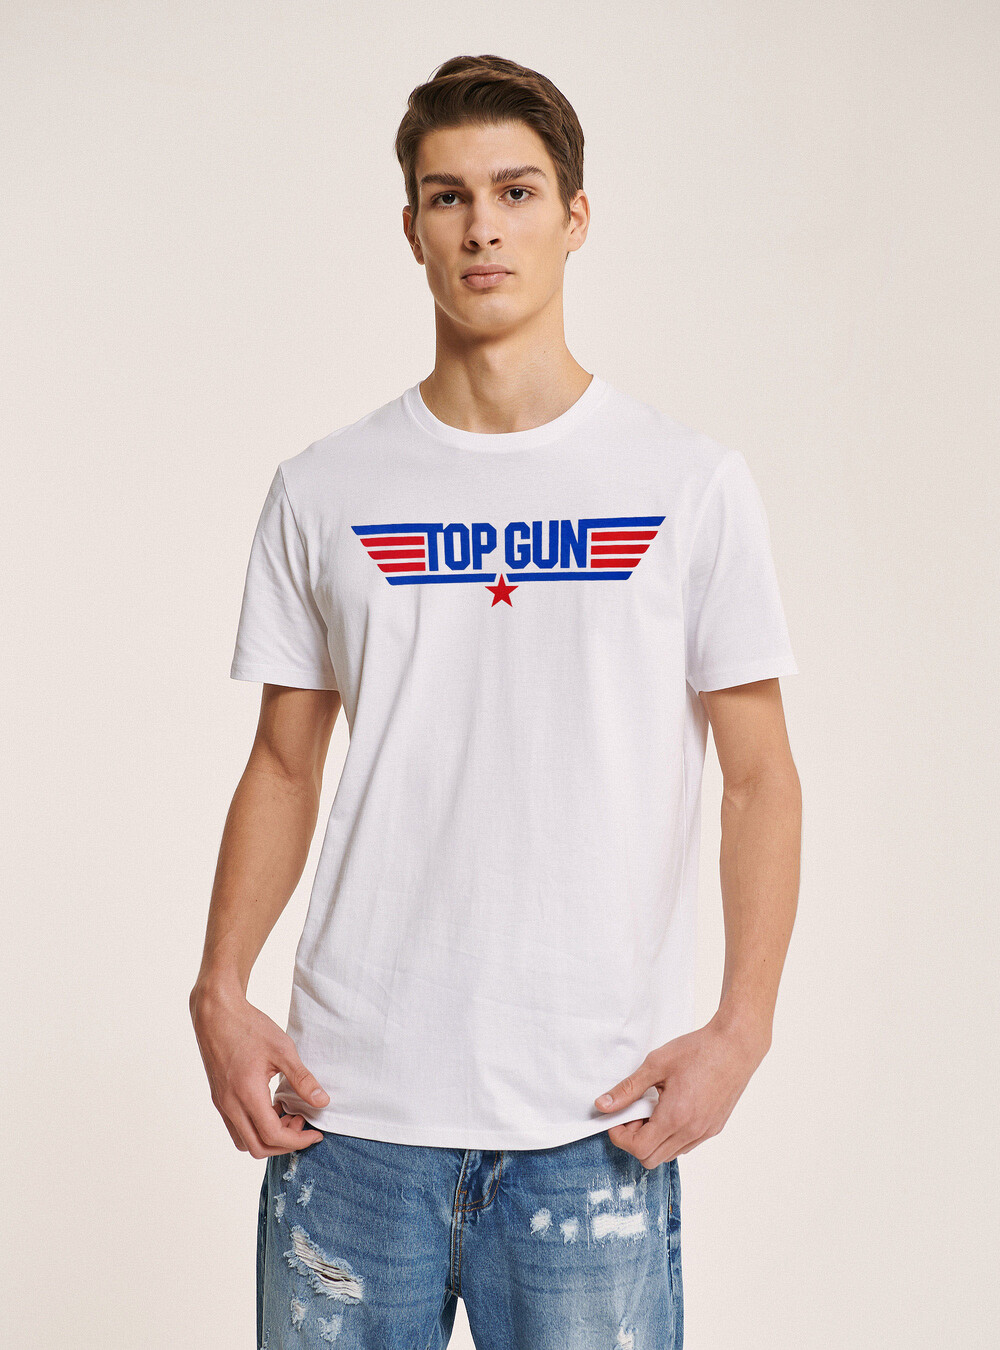 Top Gun x Alcott T-shirt